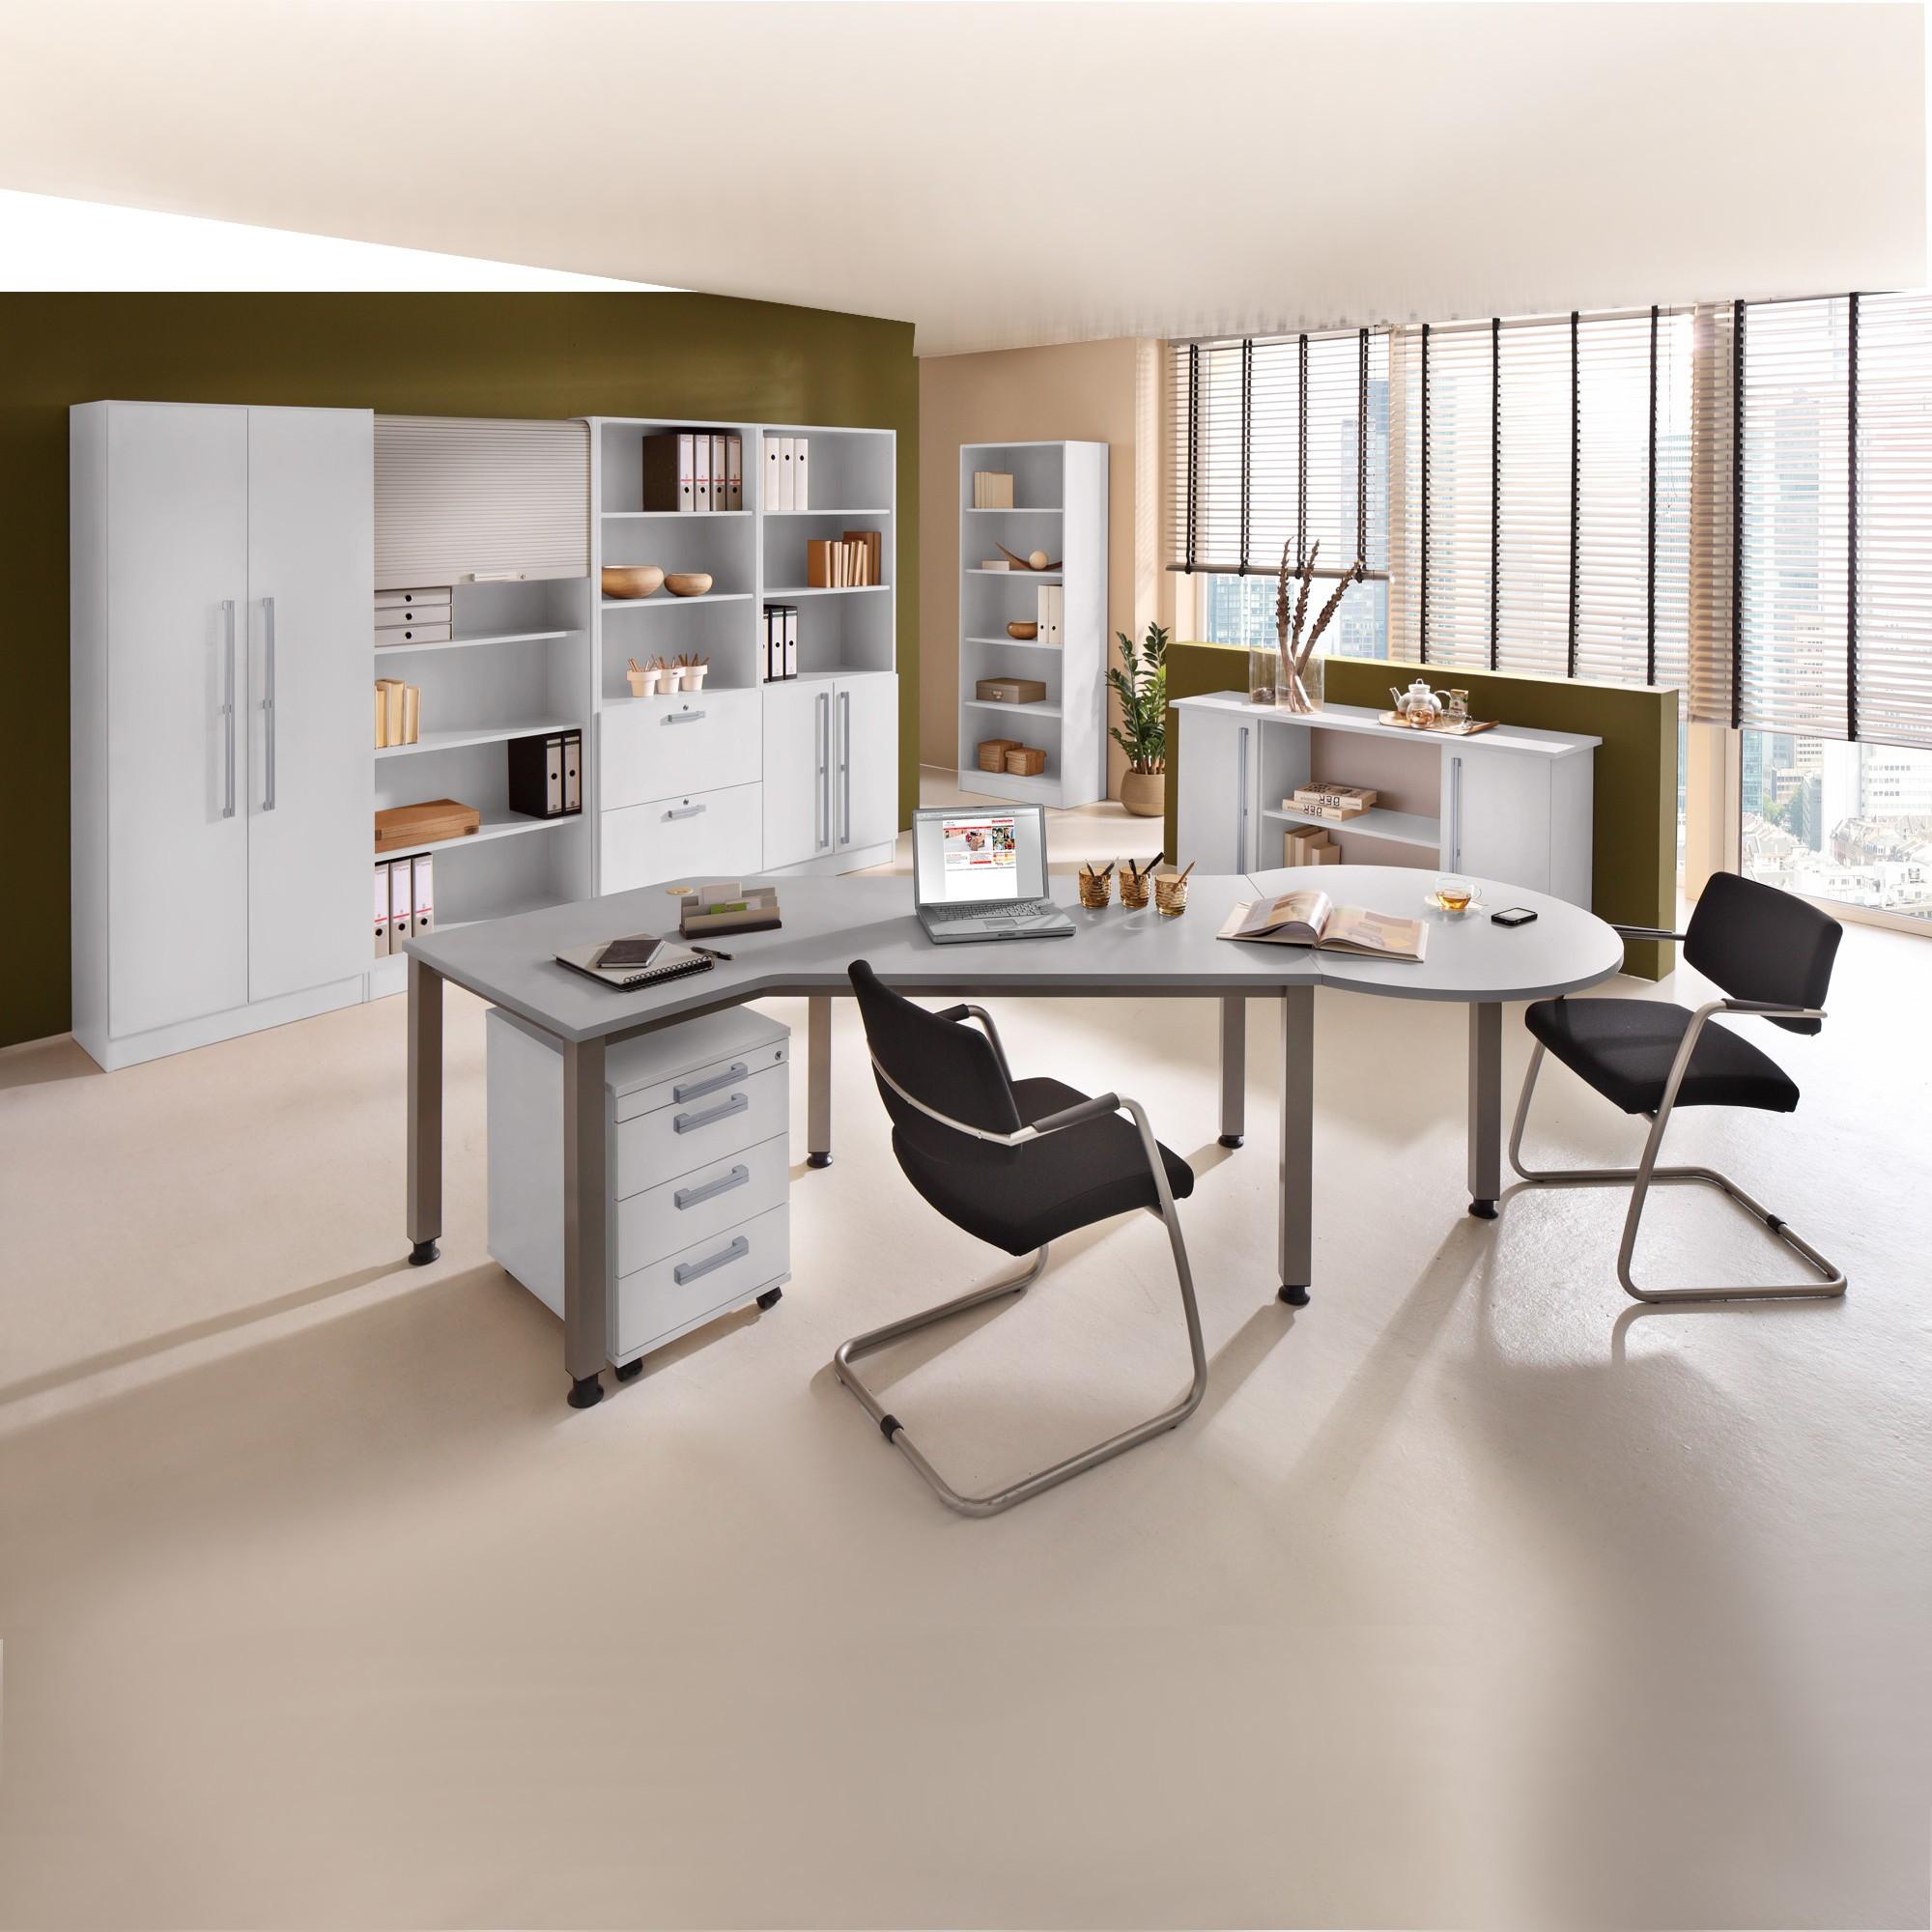 Büroraum mit Winkeltisch #büro #schreibtisch #bücherregal #schreibtischstuhl #kommode #aktenschrank ©Hammerbacher